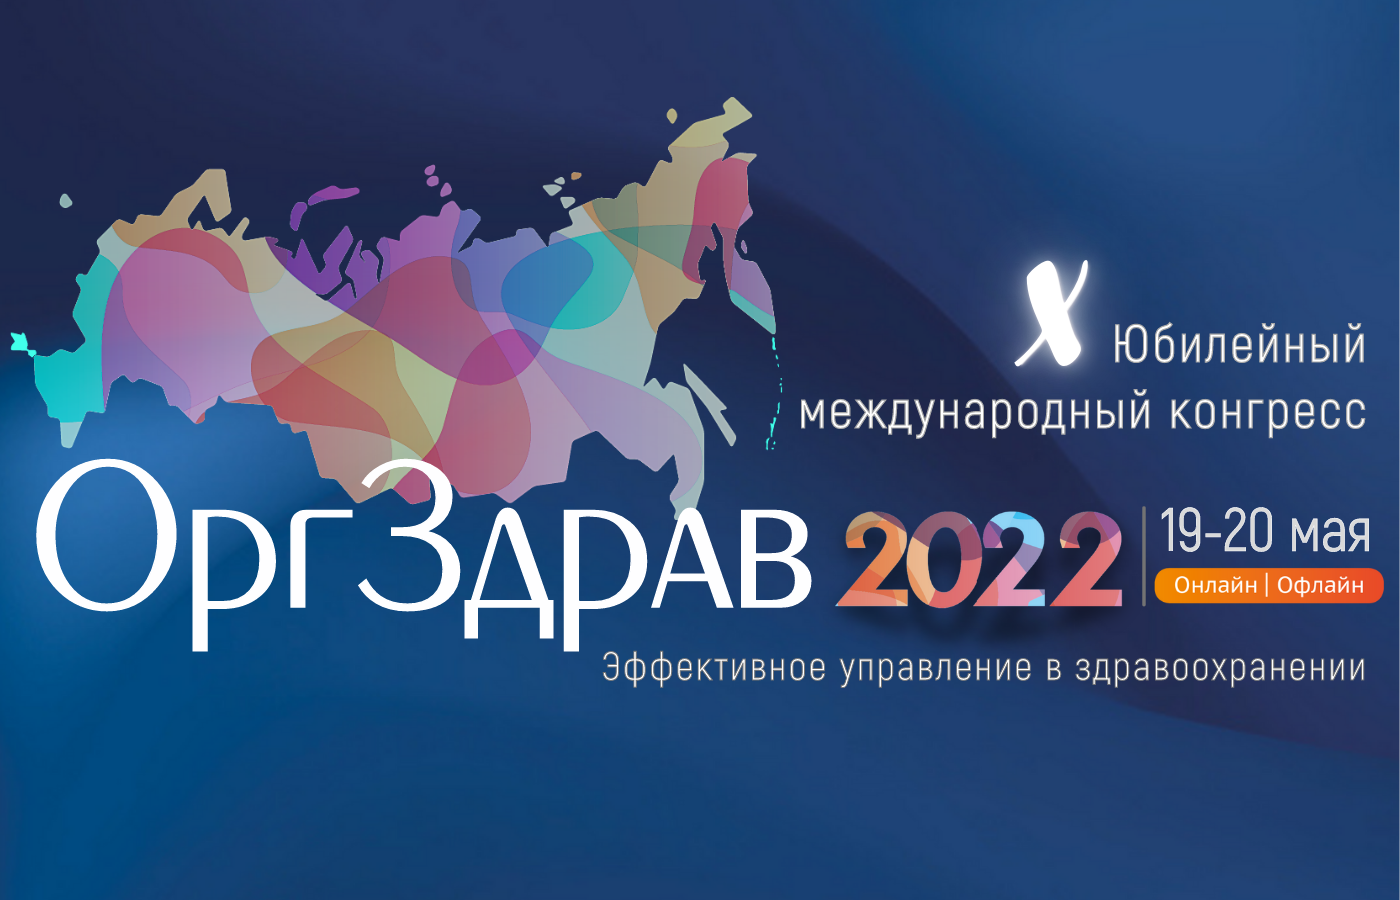 Оргздрав 2024. ВШОУЗ. РЕГЛЕК 2022. Логотип ВШОУЗ-КМК.